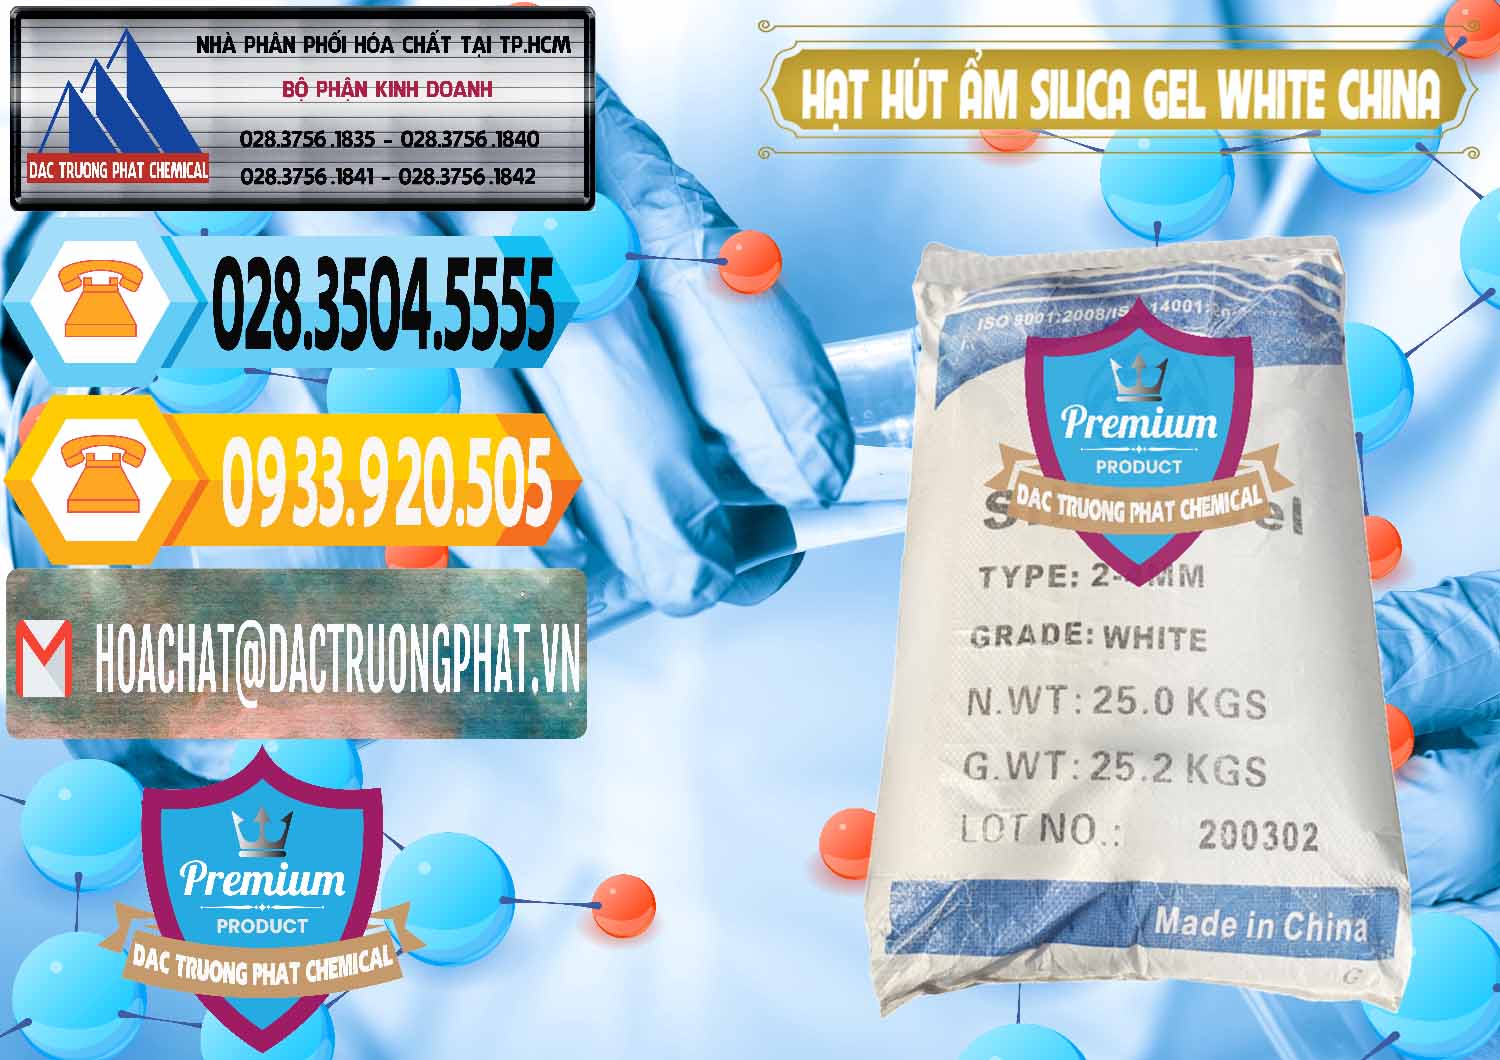 Nơi chuyên bán - cung cấp Hạt Hút Ẩm Silica Gel White Trung Quốc China - 0297 - Đơn vị cung cấp & kinh doanh hóa chất tại TP.HCM - hoachattayrua.net